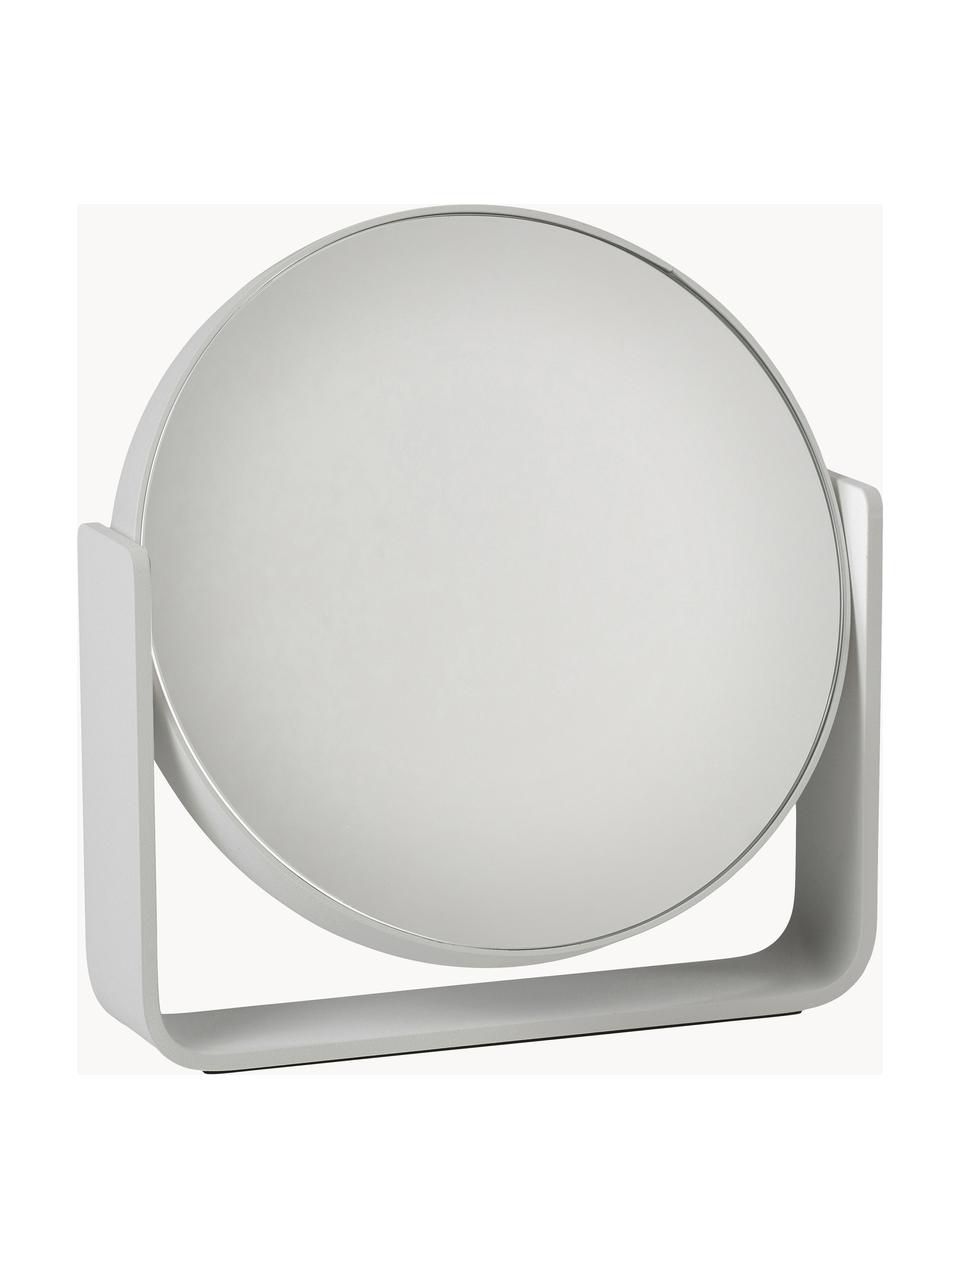 Runder Kosmetikspiegel Ume mit Vergrösserung, Hellgrau, B 19 x H 20 cm